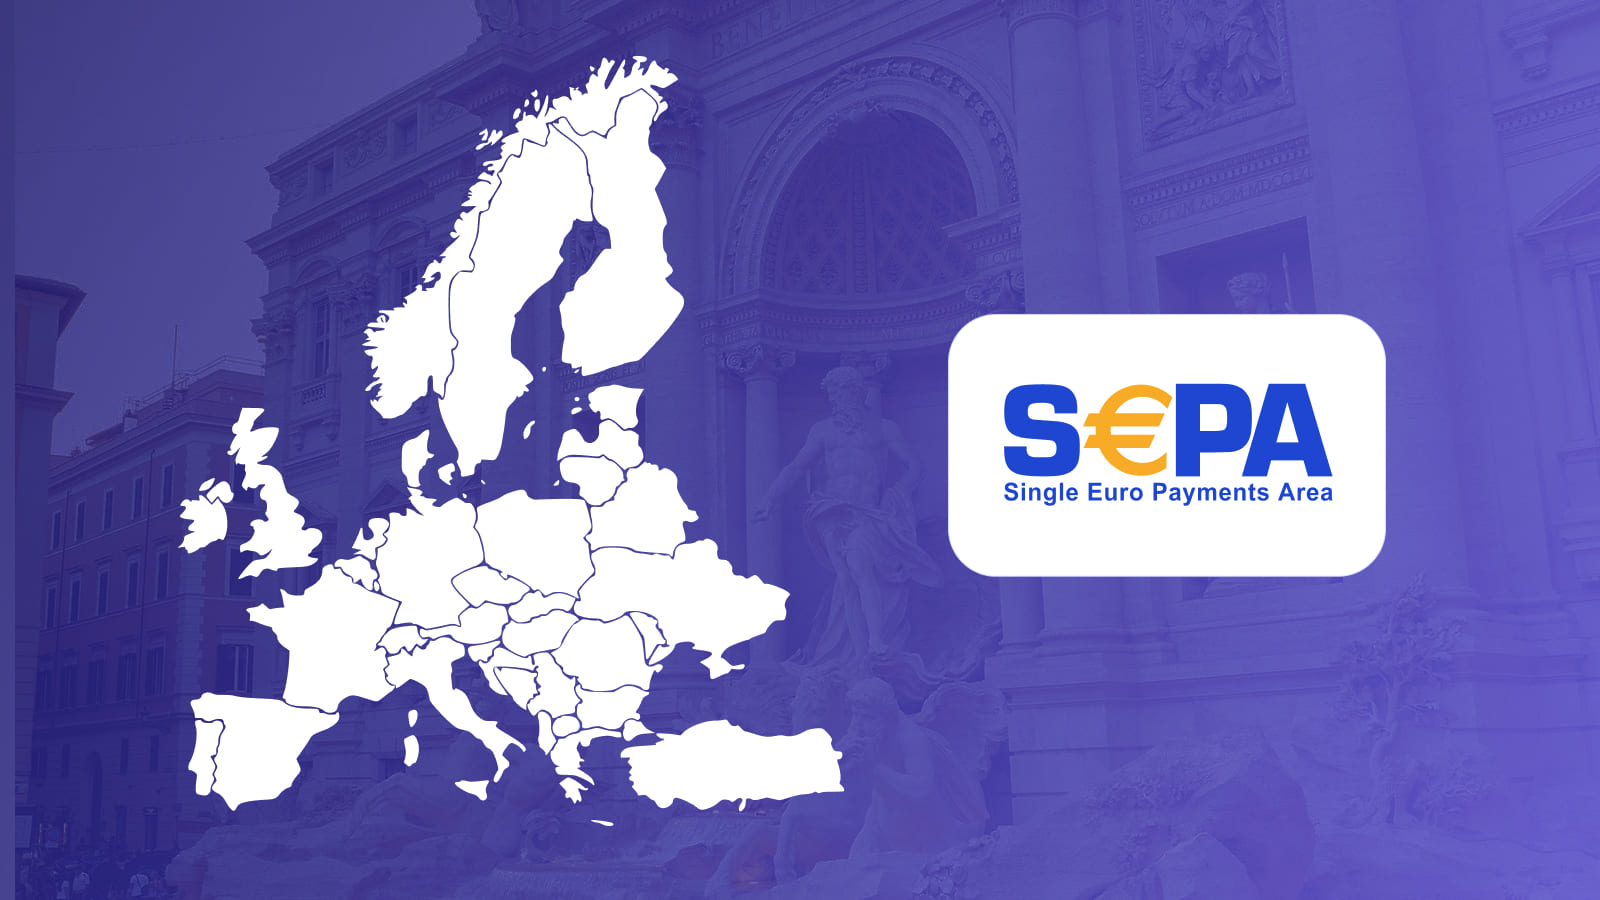 SEPA упрощает осуществление банковских транзакций на территории Европы.